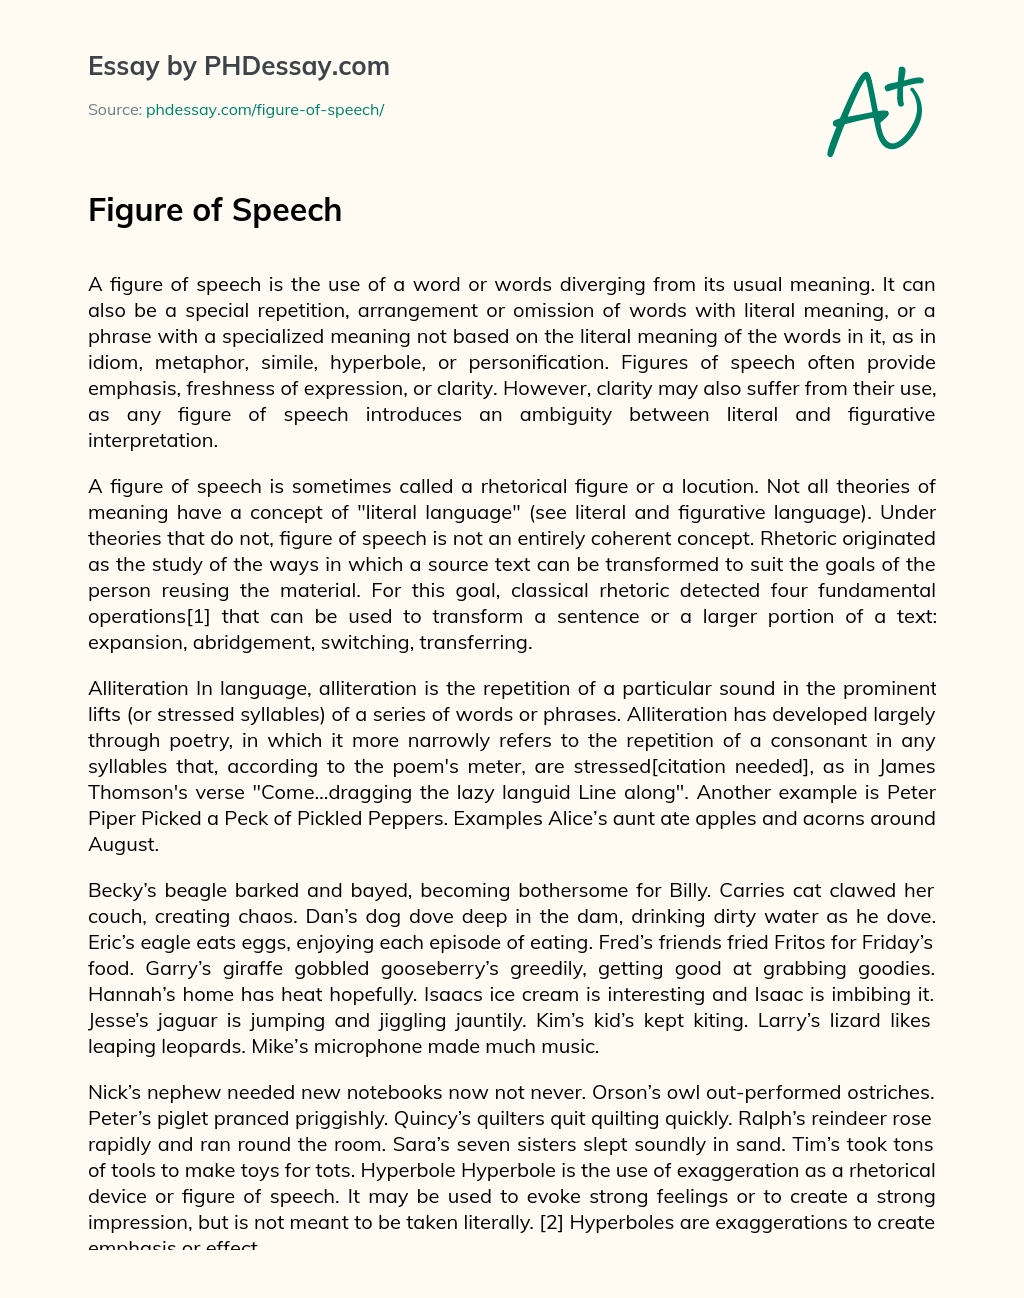 Figure of Speech essay